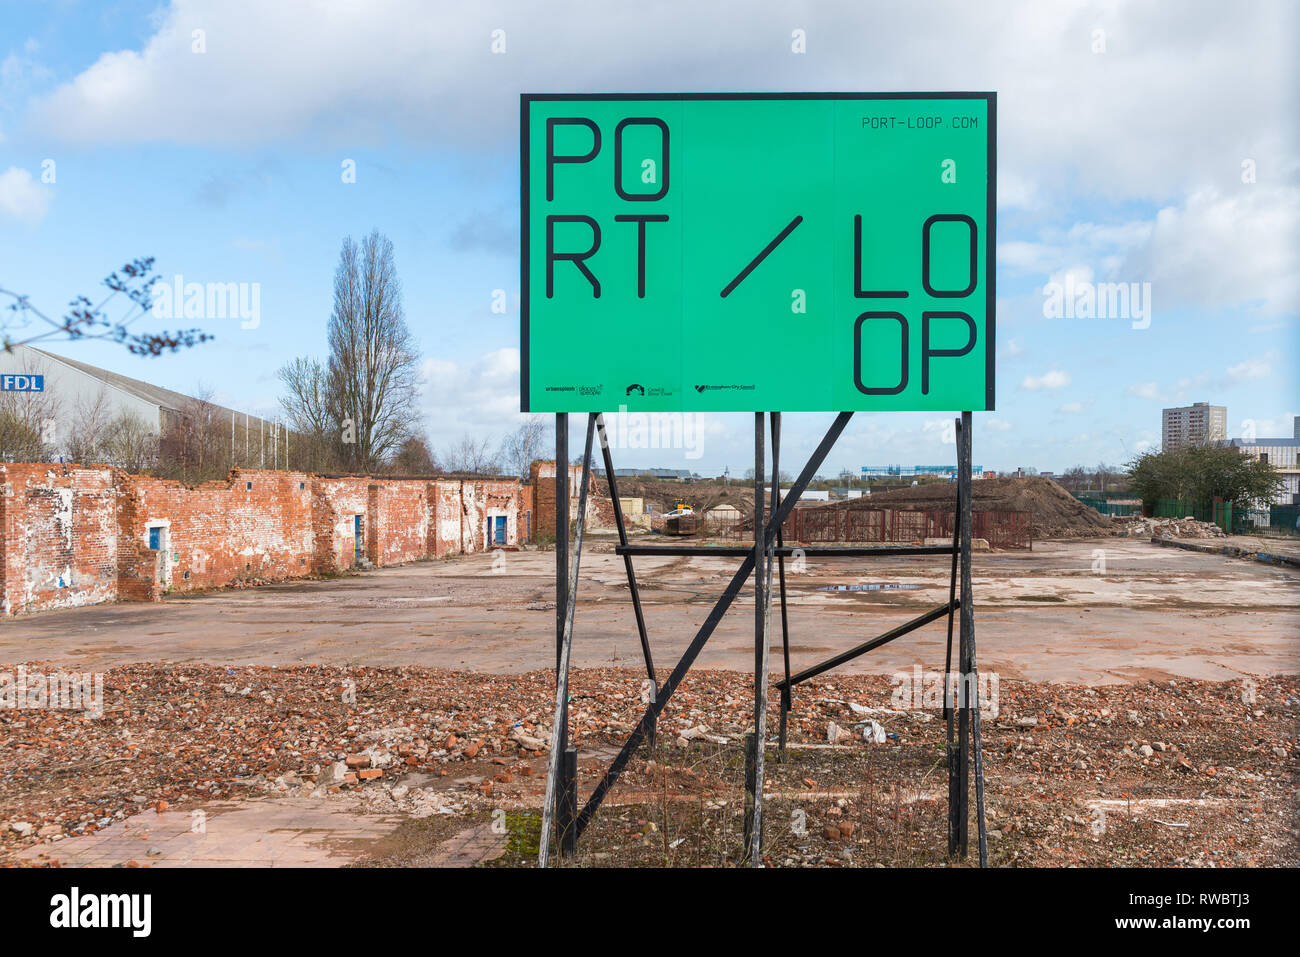 Port-Loop un alloggiamento nuovo progetto di ripristino urbano su vecchi terreni industriali in Ladywood, una città interna del distretto di Birmingham Foto Stock